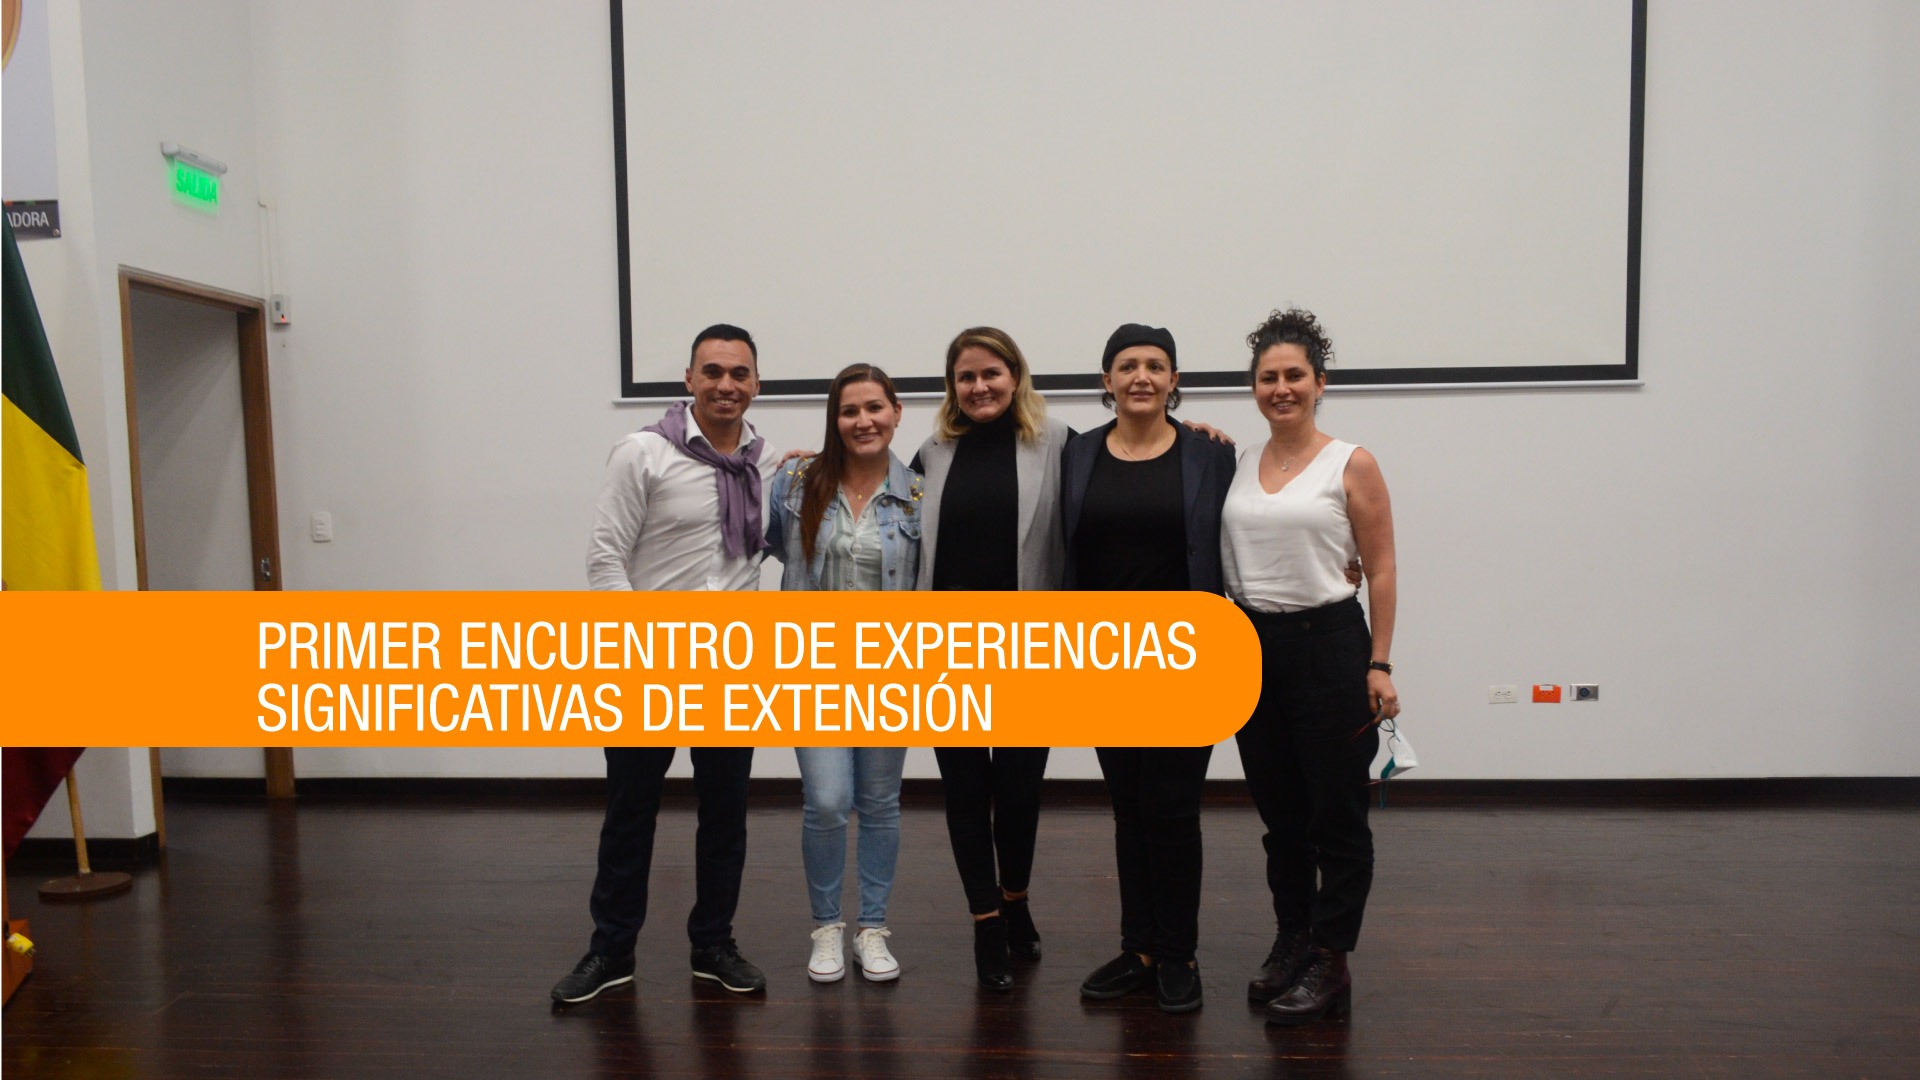 La Facultad de Ciencias de la Educación realizó el Primer Encuentro de Experiencias Significativas de Extensión